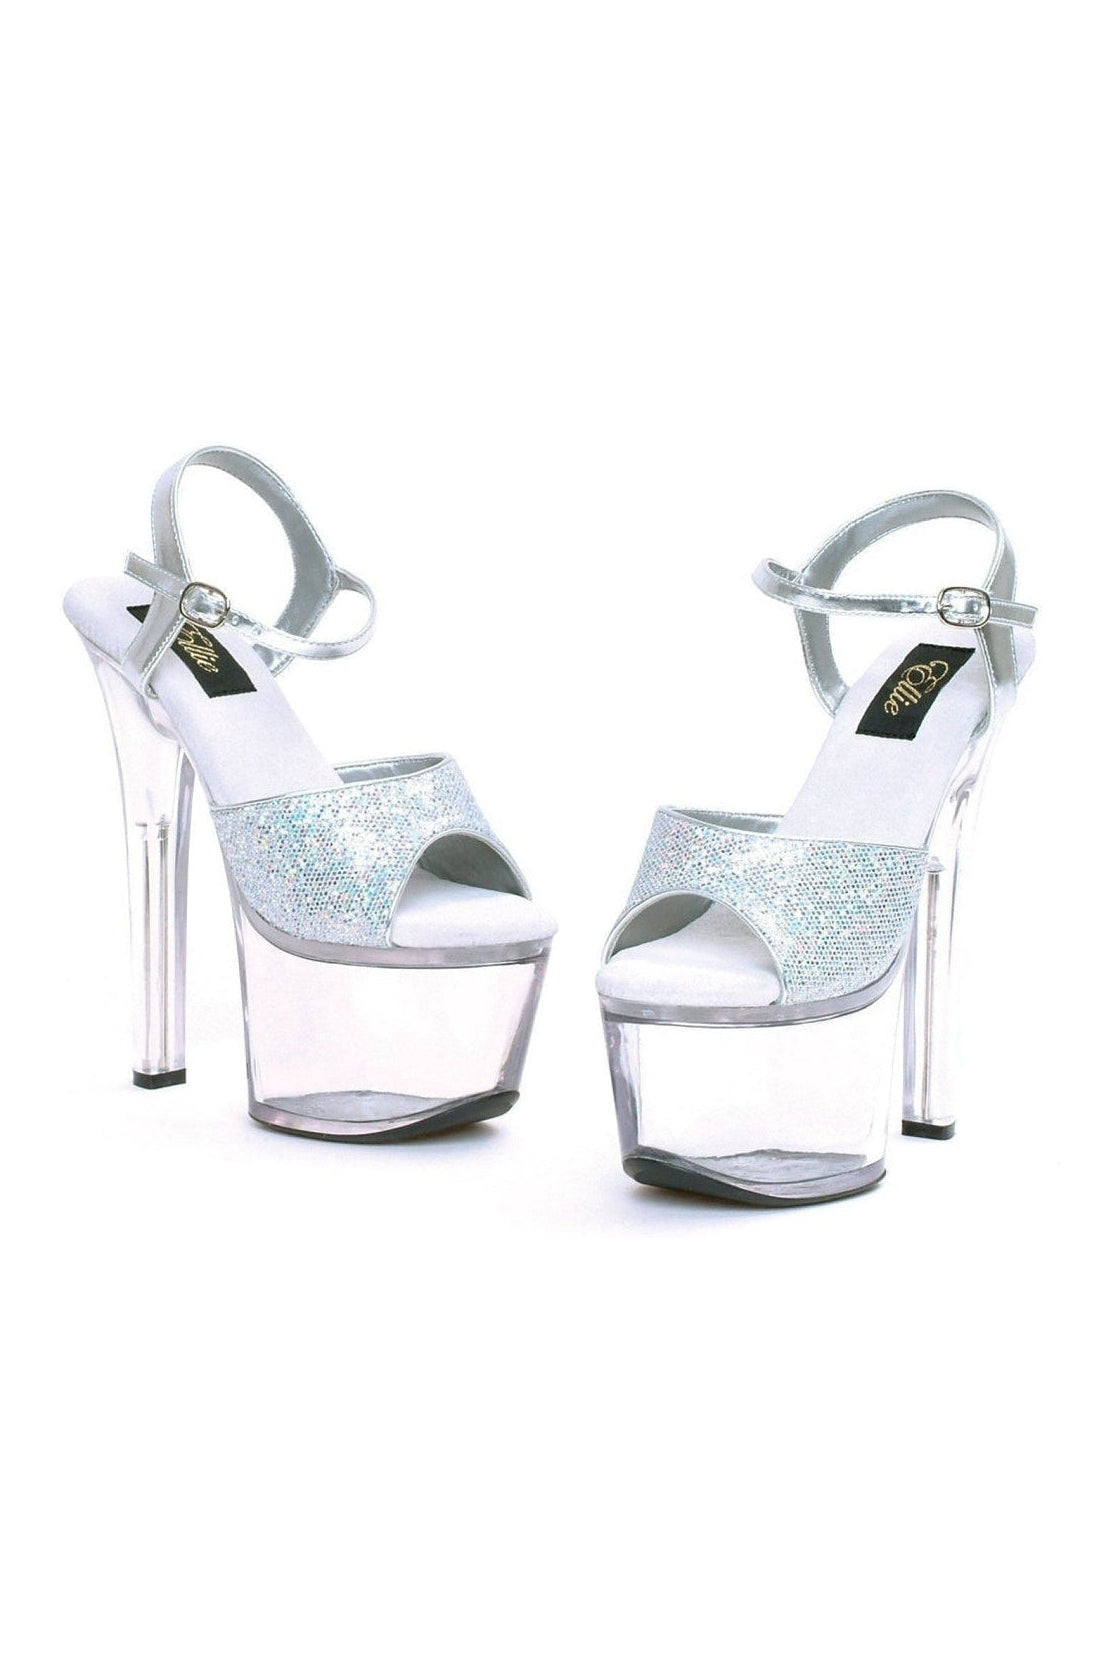 silver stripper heels